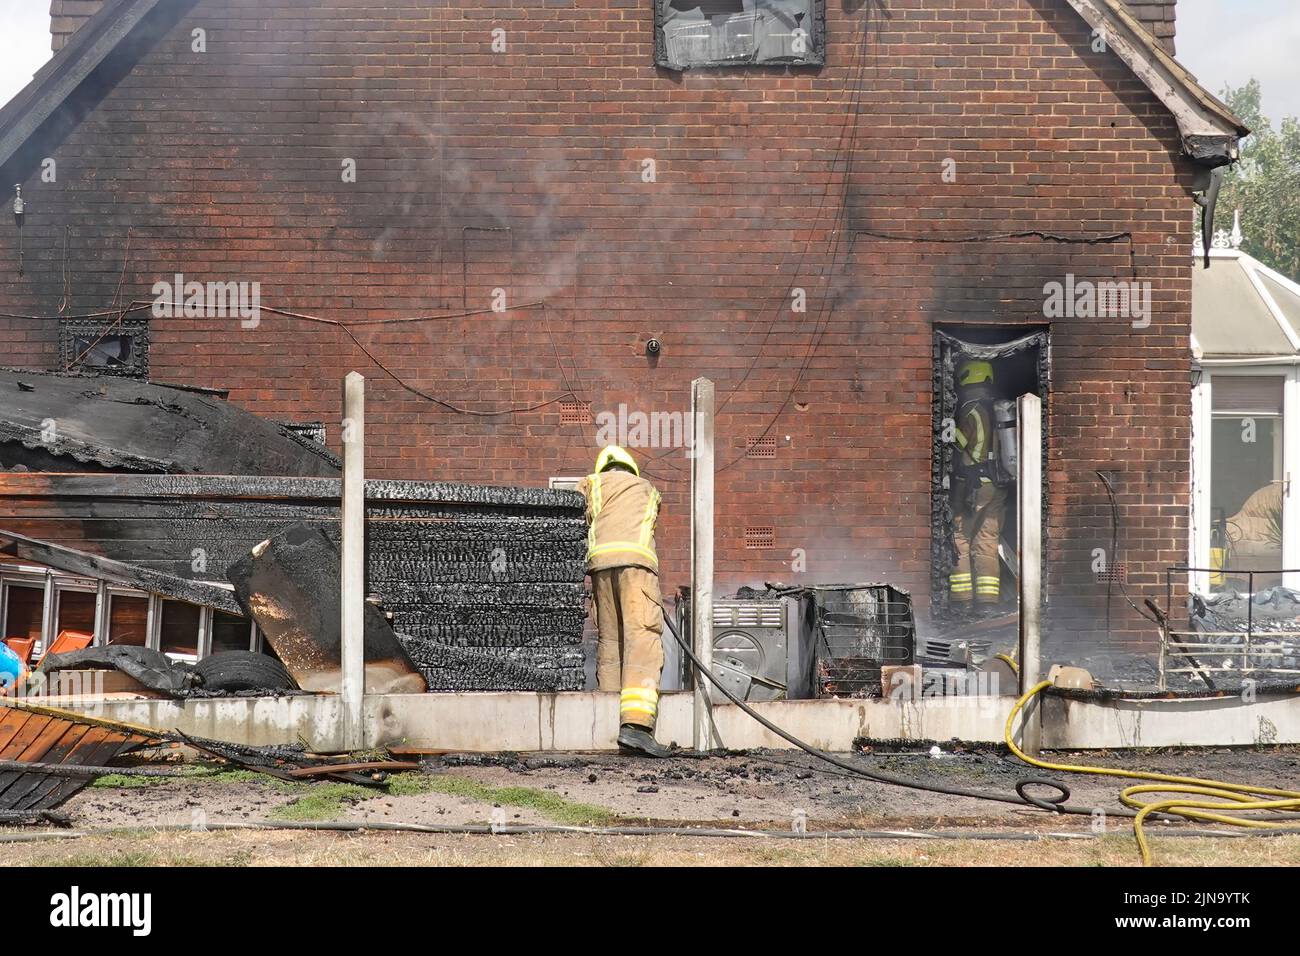 Essex Fire and Rescue Service pompier dans des vêtements de protection travail dangereux et dangereux recherche intérieure amortissement des suites incendie maison Angleterre Royaume-Uni Banque D'Images